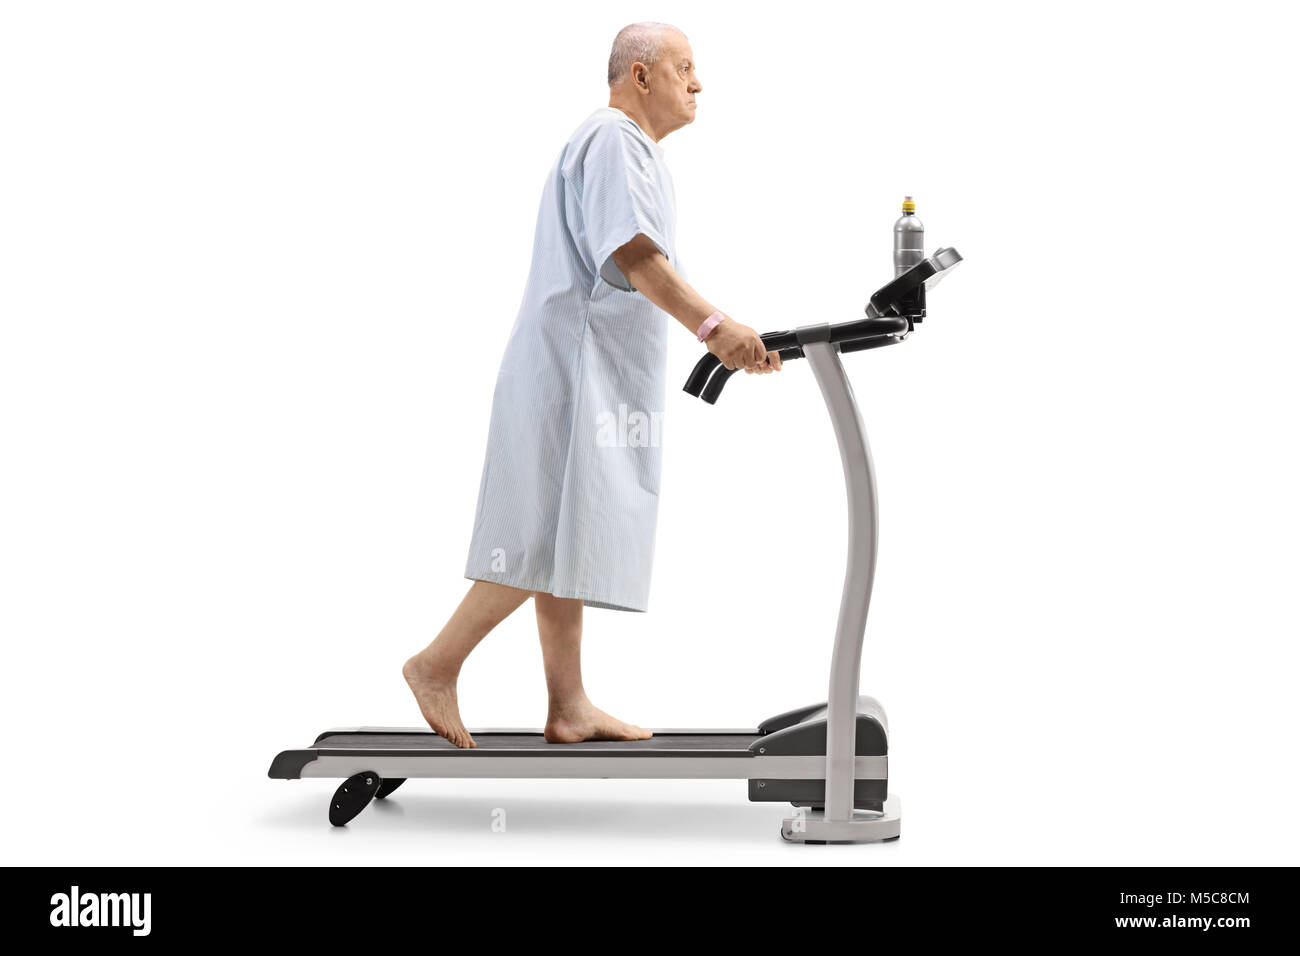 Profil tourné sur toute la longueur d'un patient âgé marcher sur un tapis roulant isolé sur fond blanc Banque D'Images